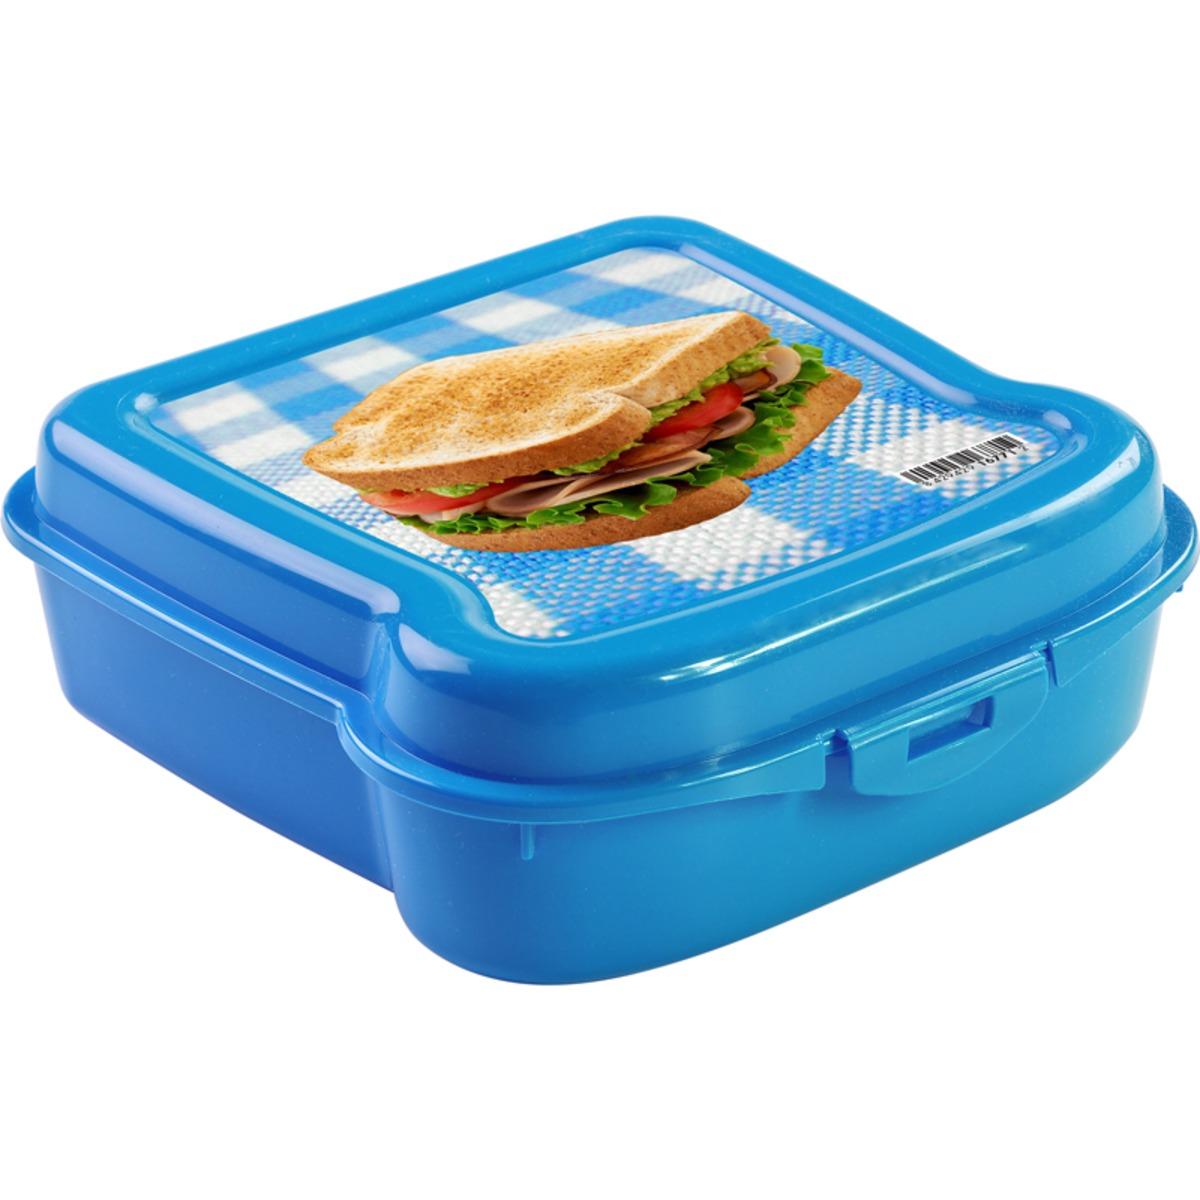 Boîte de conservation alimentaire - 13,8 x 13,8 x H 5 cm -Bleu